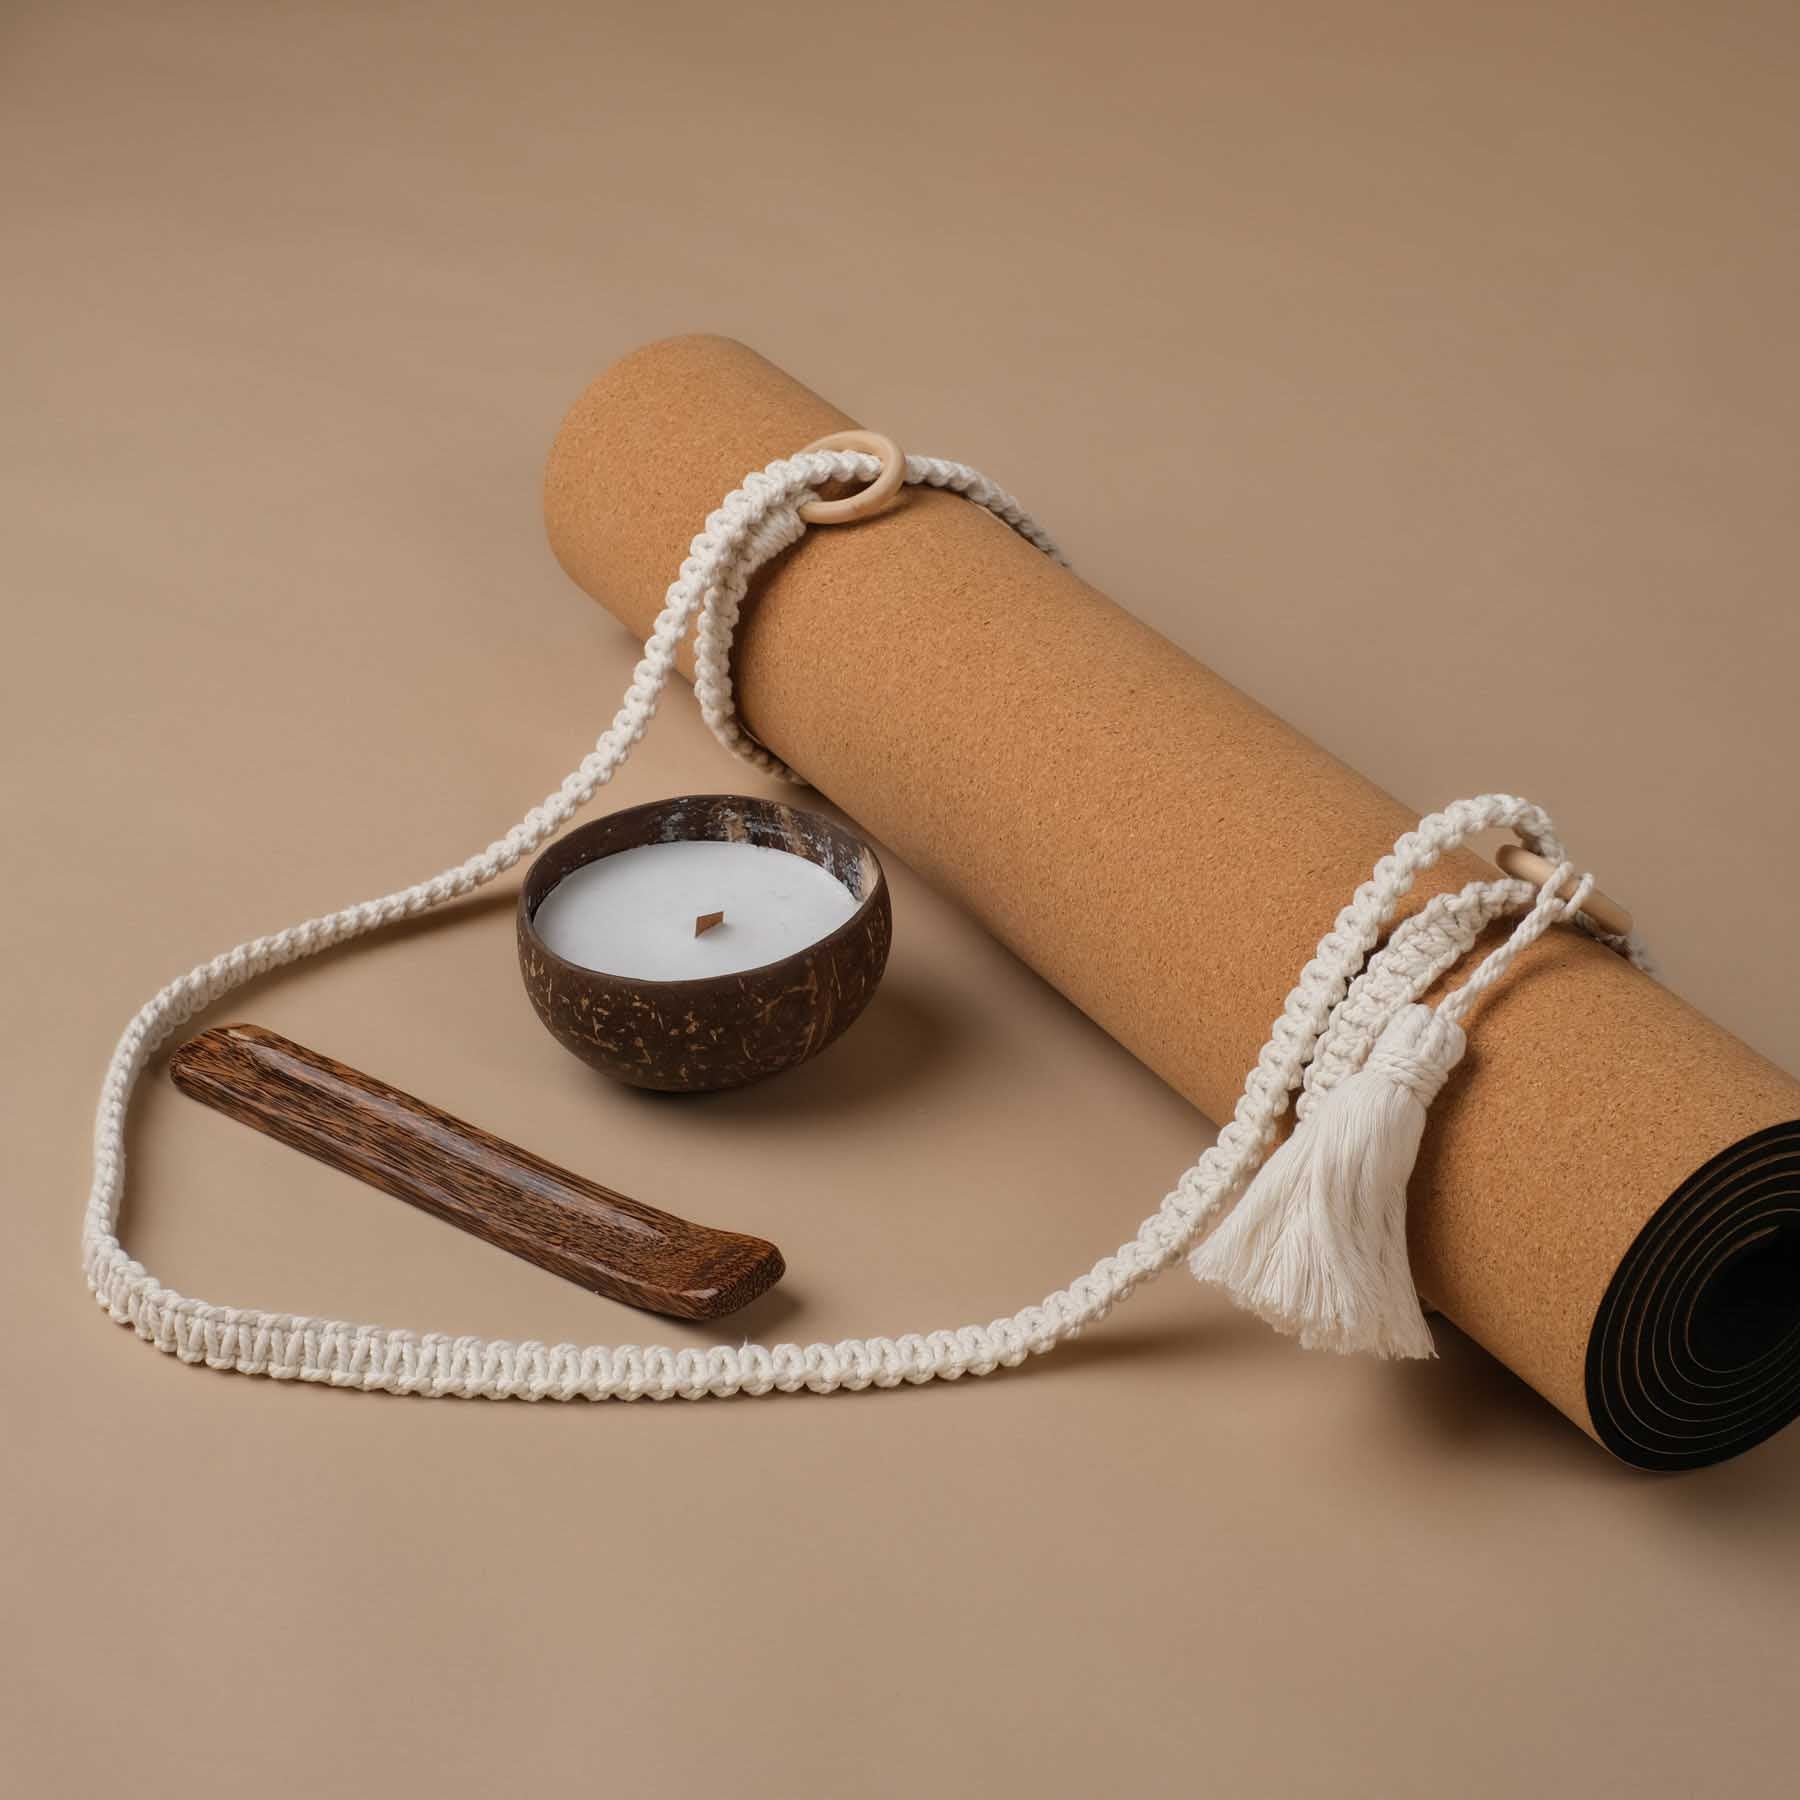 Idée de cadeau de yoga durable - set cadeau composé d'une bougie flottante parfumée à la noix de coco, d'une sangle de transport pour tapis de yoga en macramé et d'un porte-encens. Tout est fait à la main.